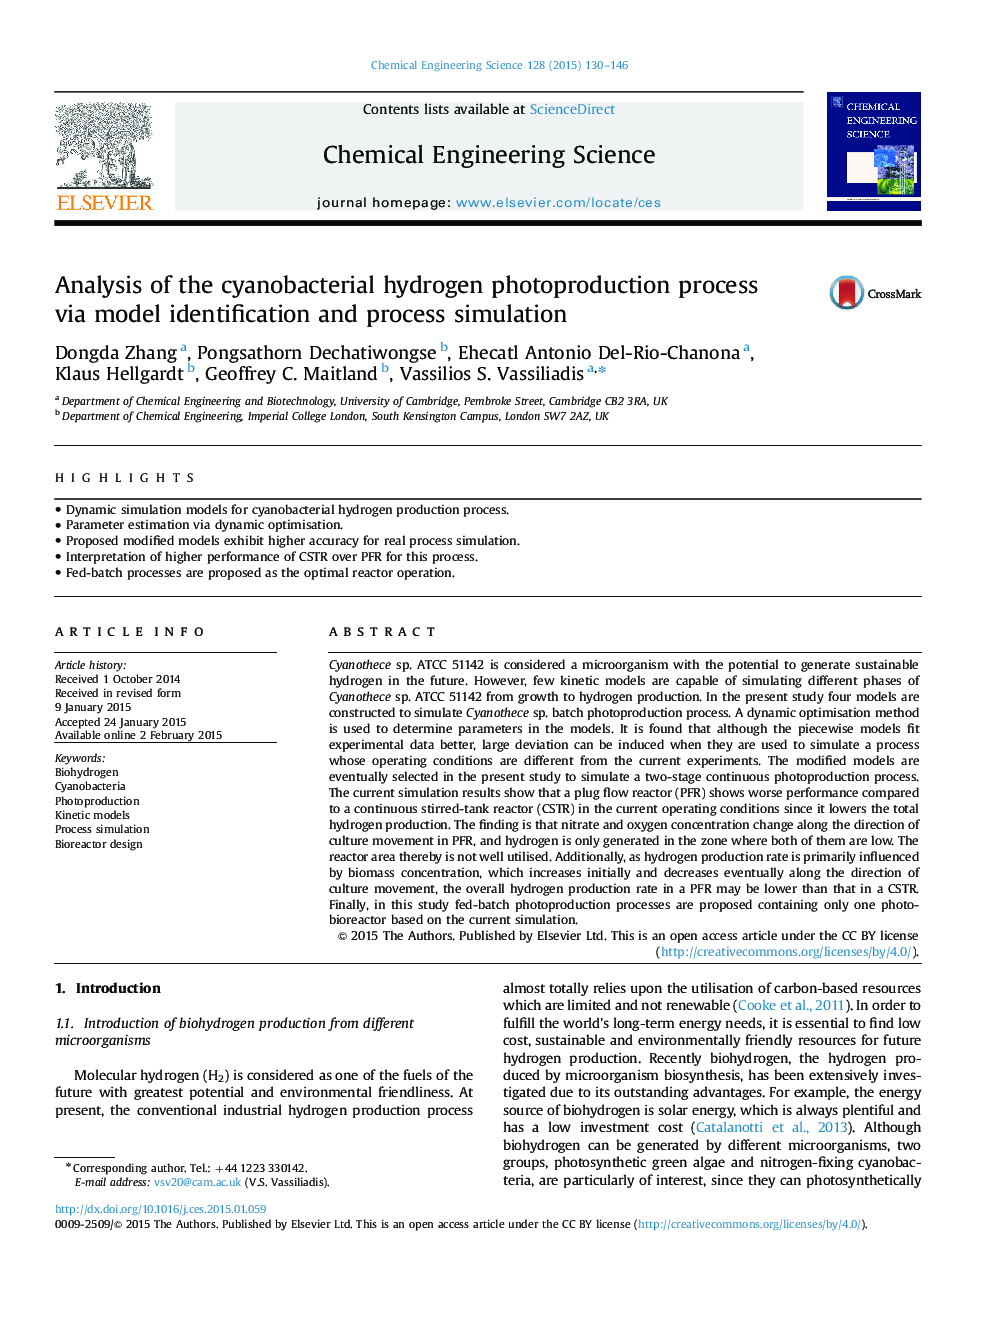 تجزیه و تحلیل فرآیند تولید فلوئور هیدروژن سیانوباکتریایی از طریق شناسایی مدل و شبیه سازی فرآیند 